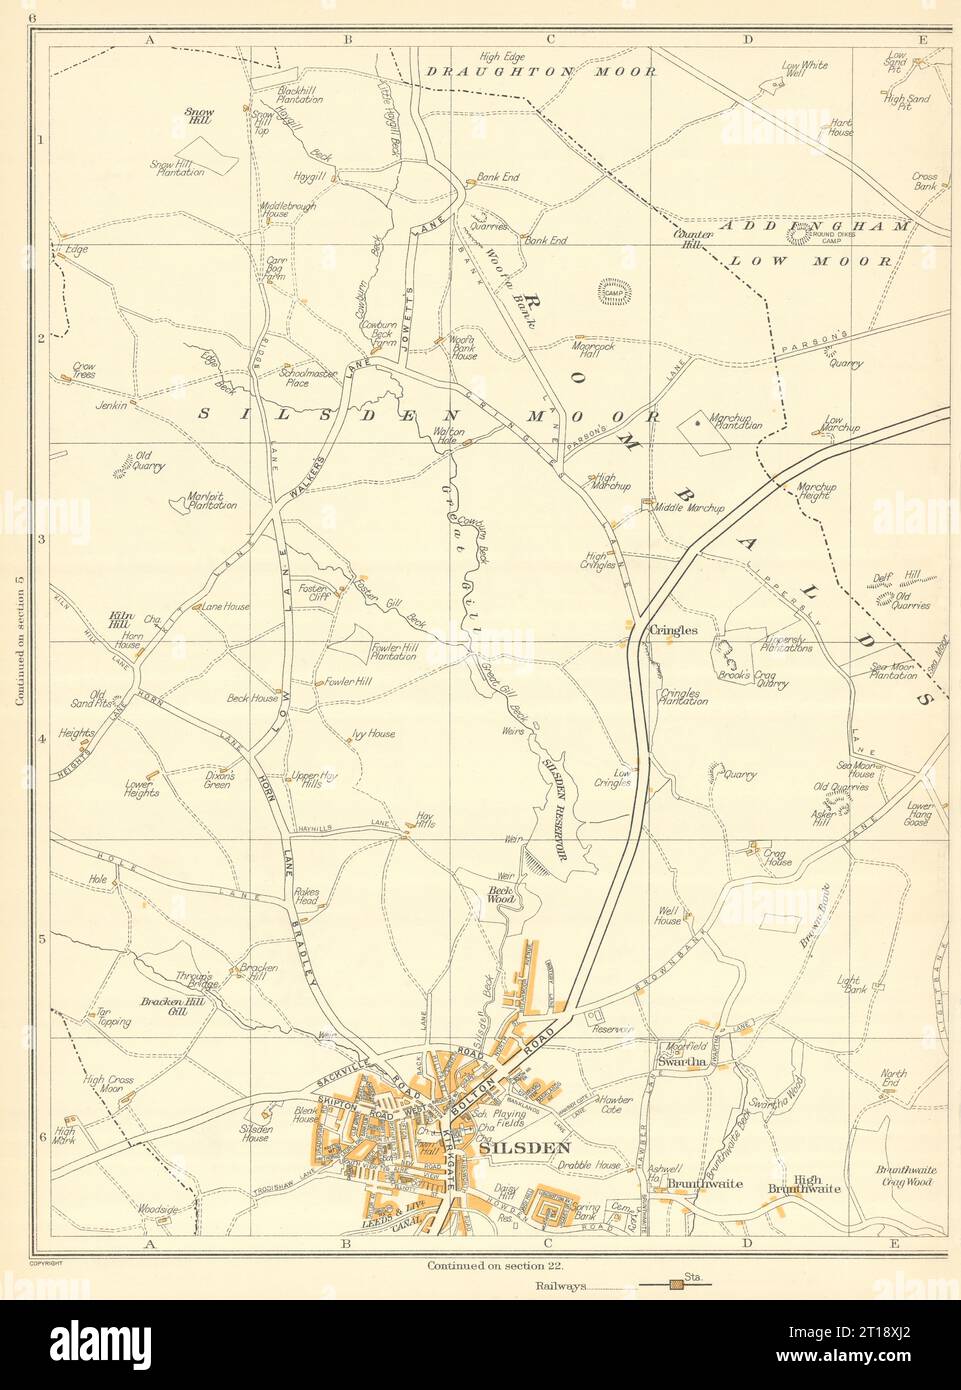 YORKSHIRE Silsden Draughton Moor Brunthwaite Cringles Addingham 1935 old map Stock Photo